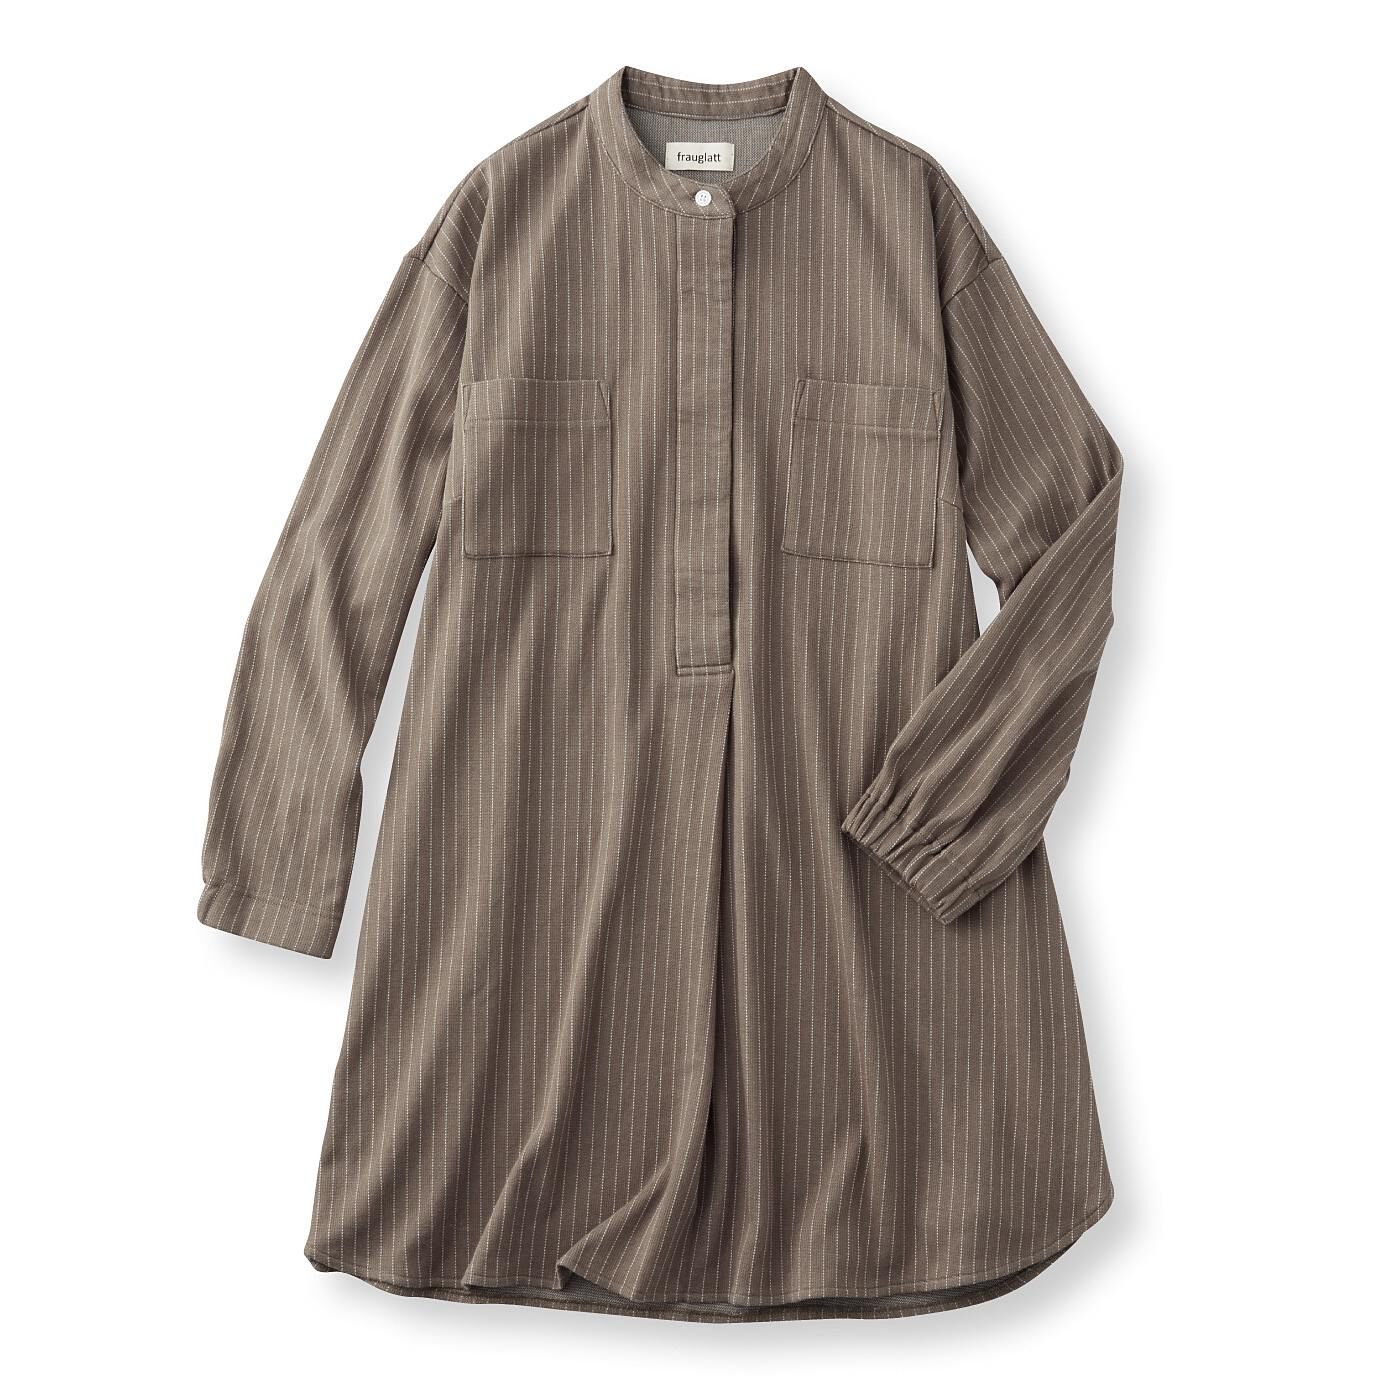 frauglatt|フラウグラット　スースーすき間冷え対策 きちんとシャツ見え すっきり比翼仕立てのカットソーストライプチュニックの会|〈ブラウンカーキ〉